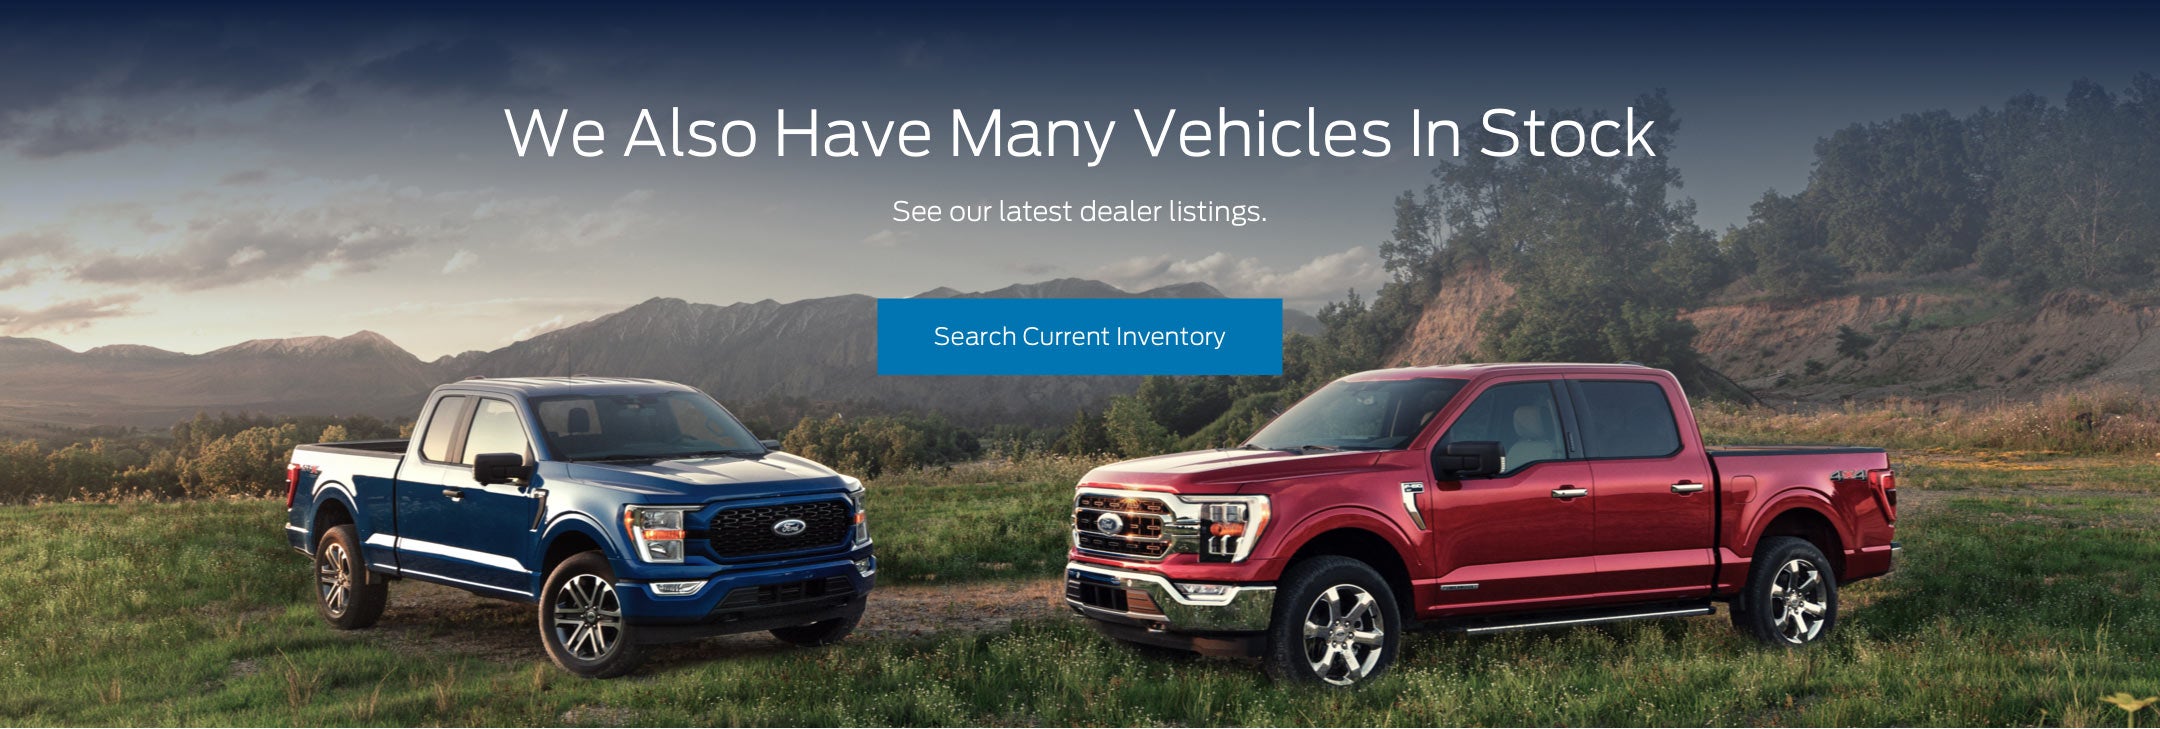 Ford vehicles in stock | Medford Motors, Inc. in Medford WI